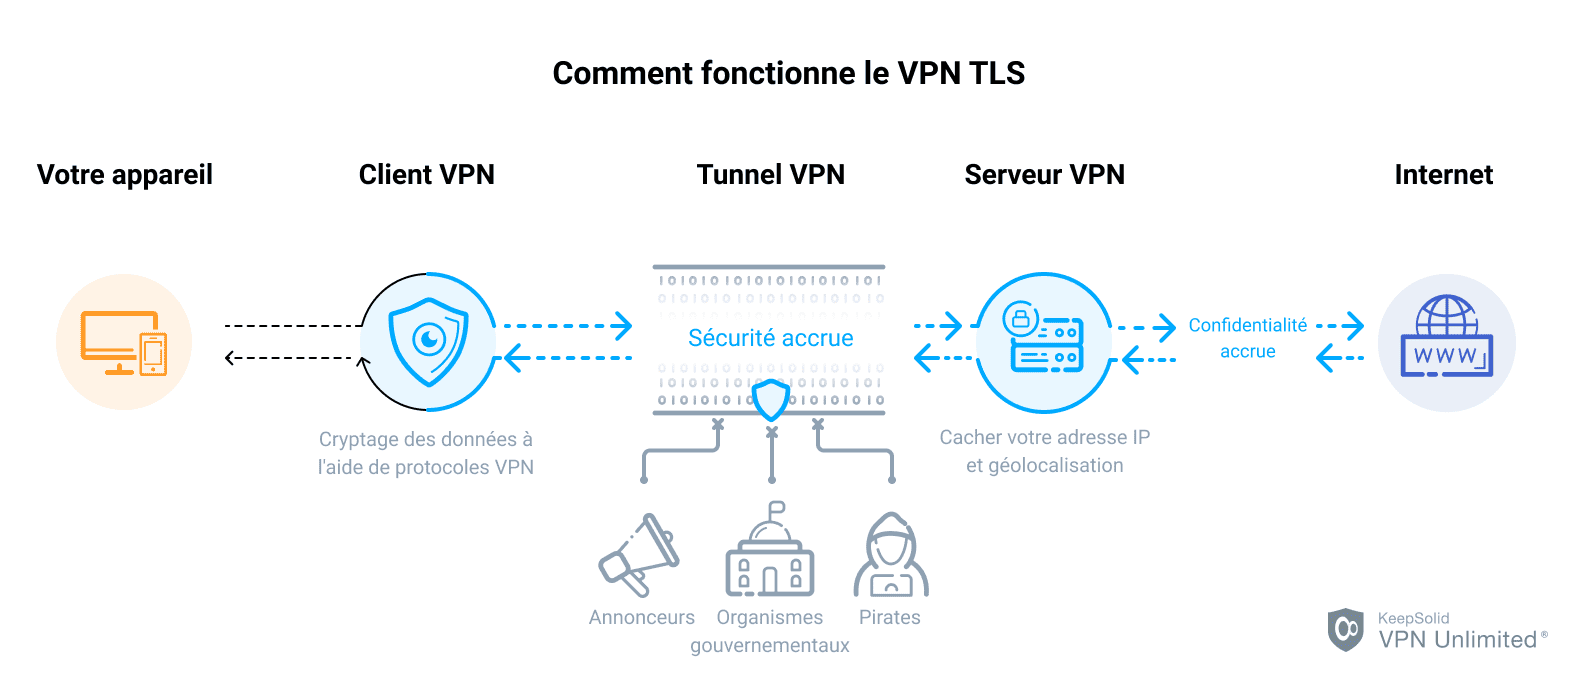 Comment fonctionne le VPN TLS